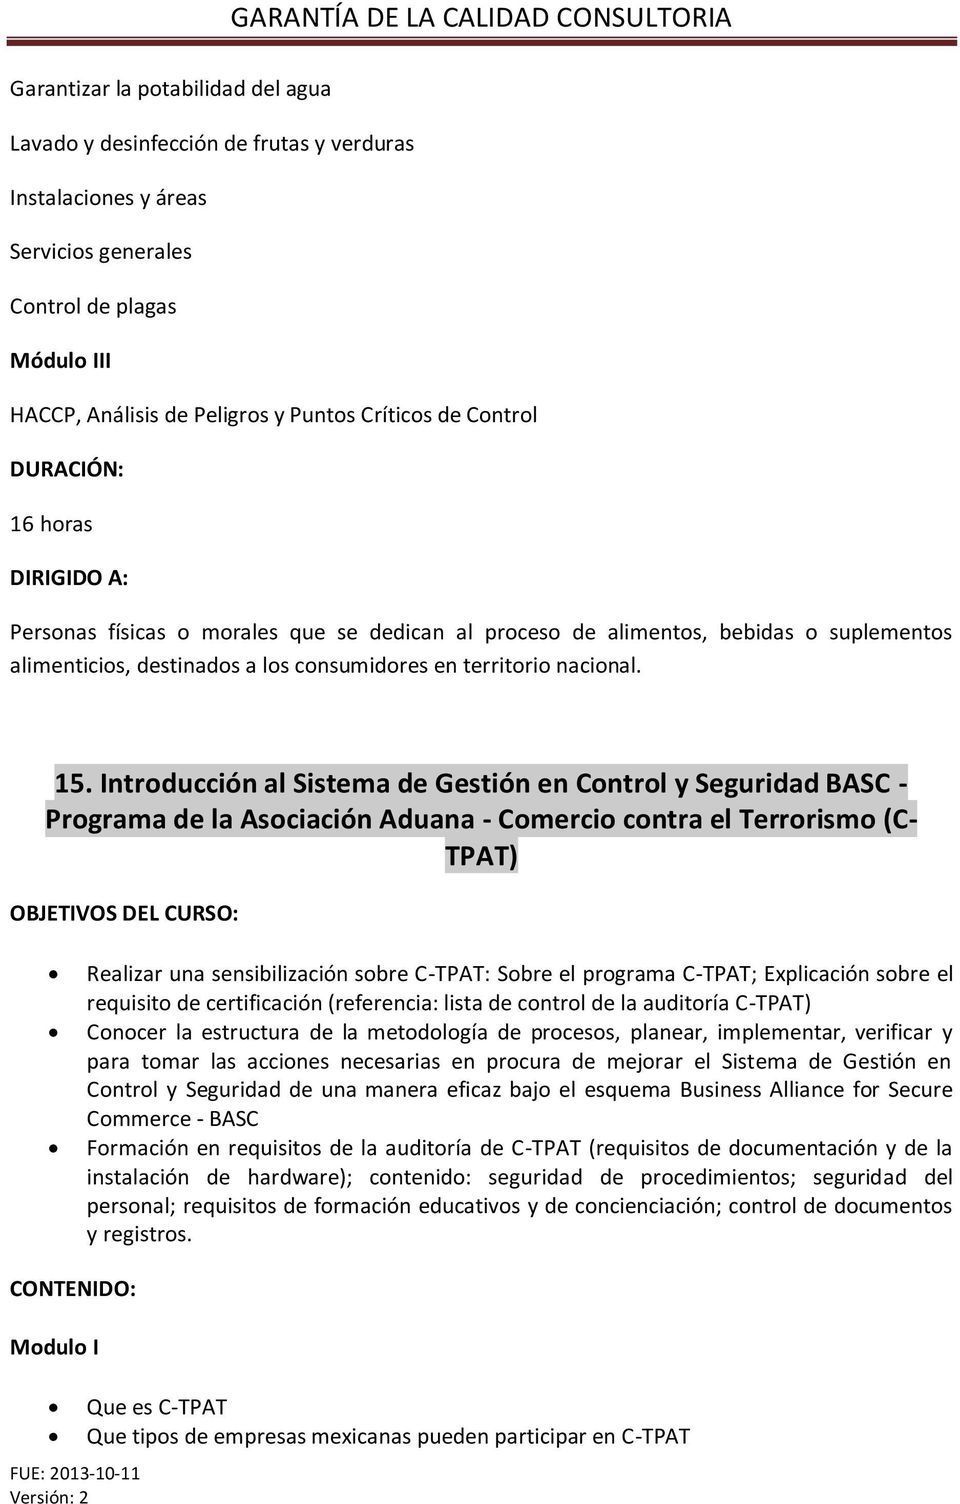 Introducción al Sistema de Gestión en Control y Seguridad BASC - Programa de la Asociación Aduana - Comercio contra el Terrorismo (C- TPAT) Realizar una sensibilización sobre C-TPAT: Sobre el